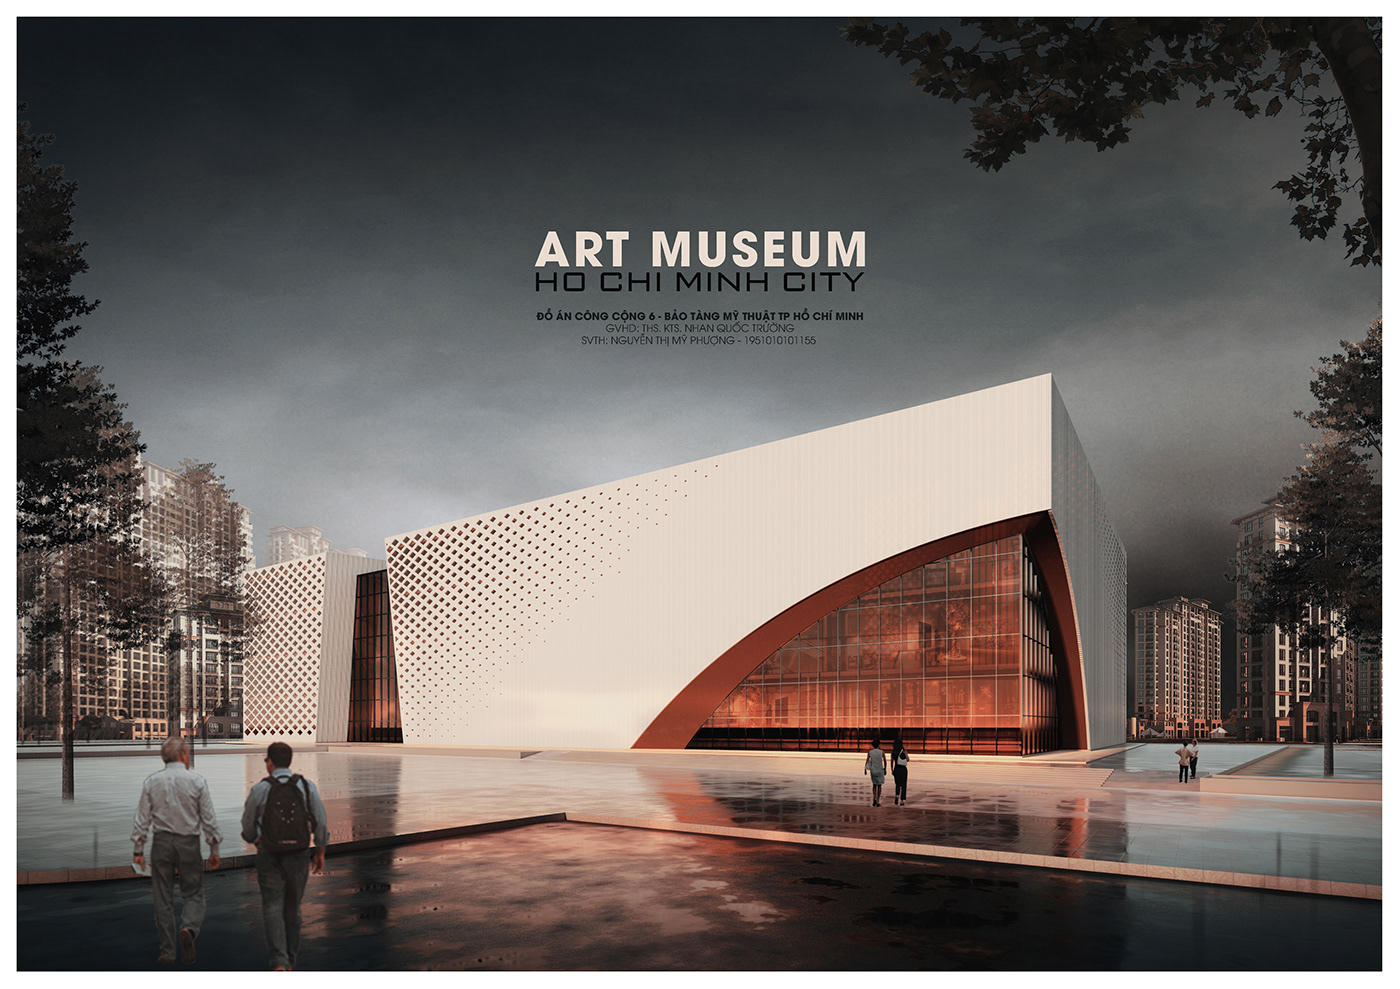 architecture Project museum Museum Design Revit Architecture photoshop 3D Art museum ho chi minh vietnam